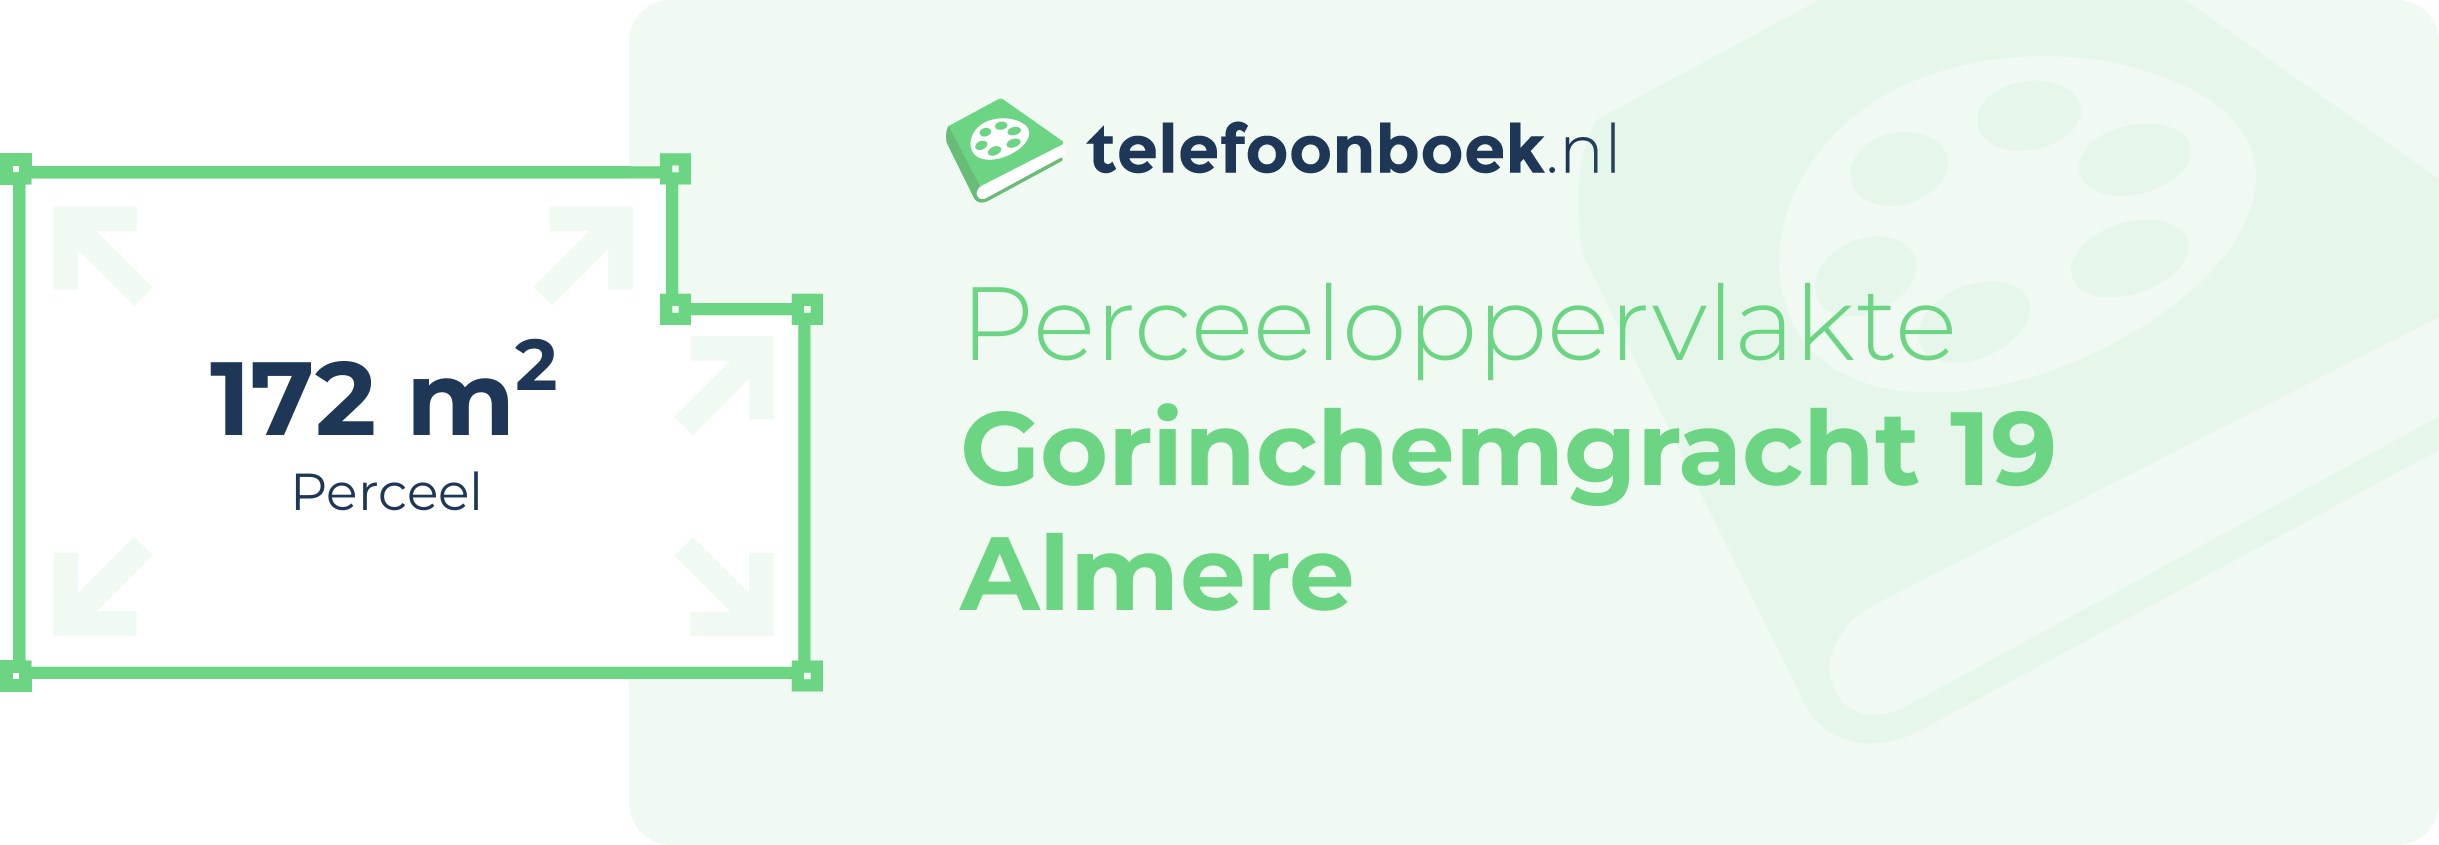 Perceeloppervlakte Gorinchemgracht 19 Almere